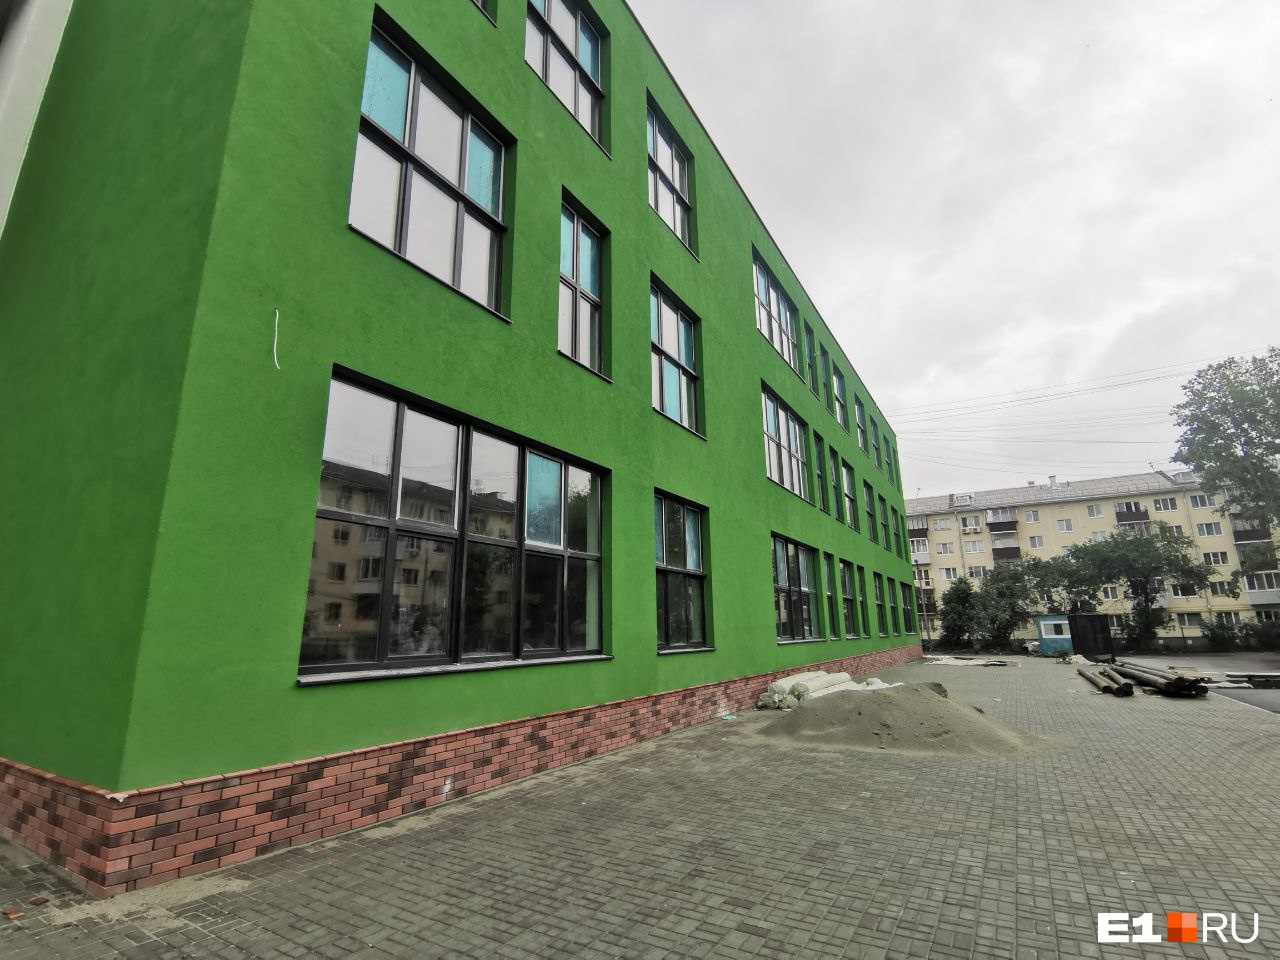 Стало известно, когда в Екатеринбурге откроют гимназию, которую строят под надзором президента